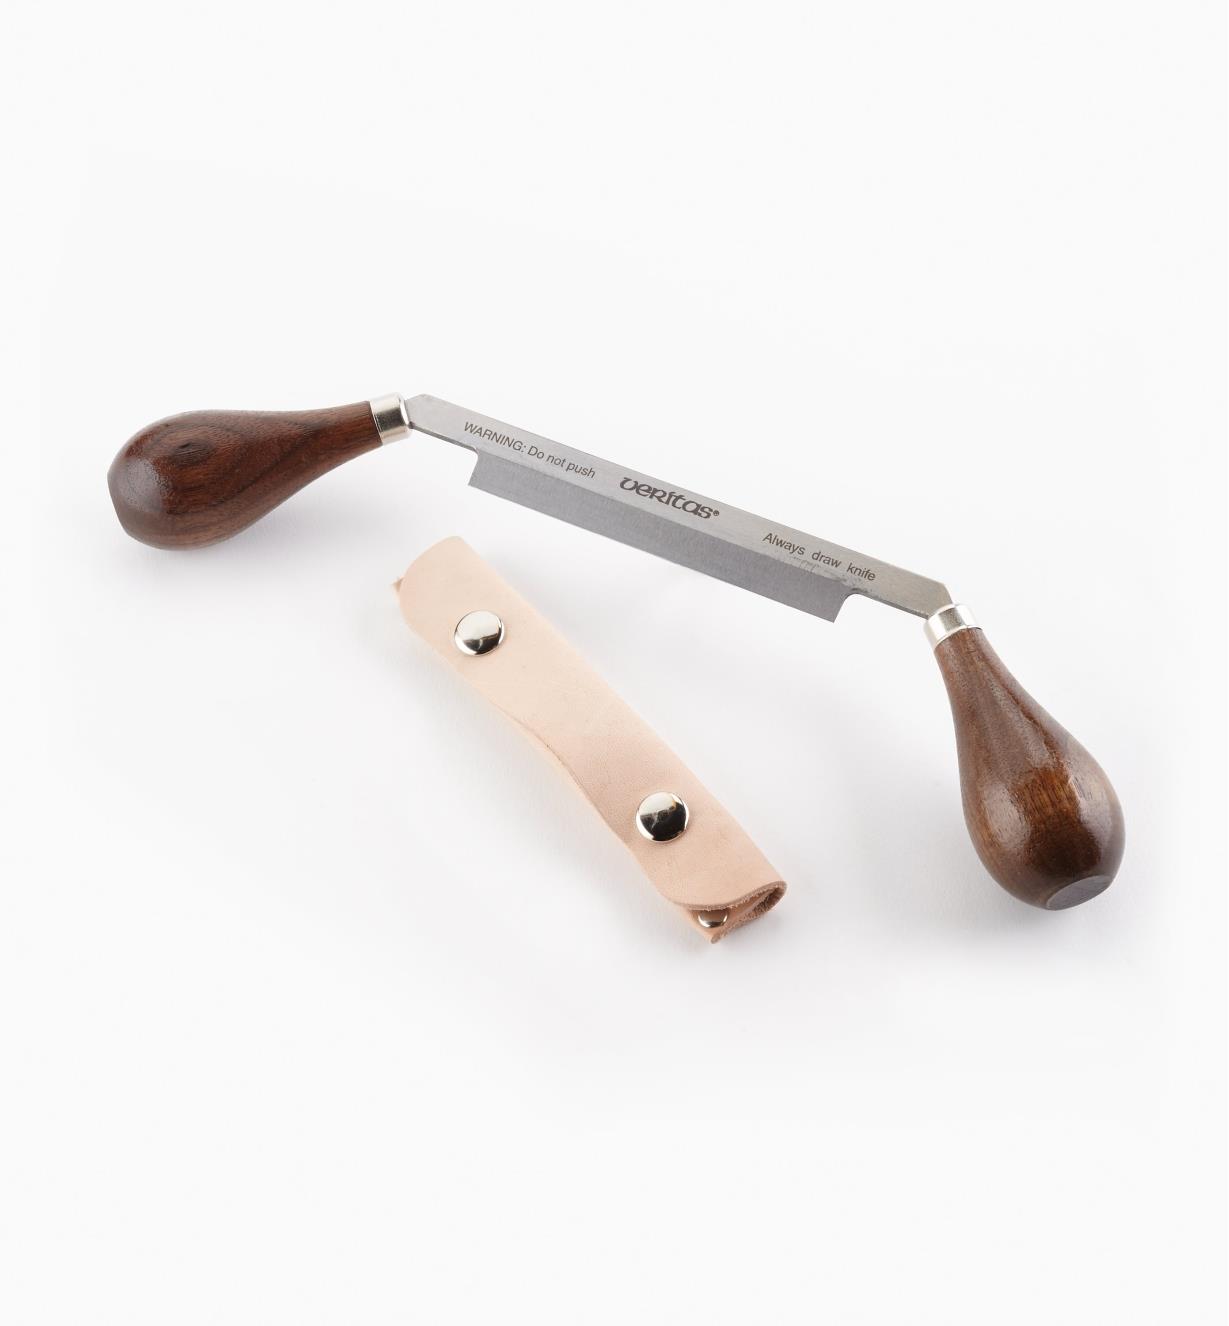 17U0631 - Drawknife & Case